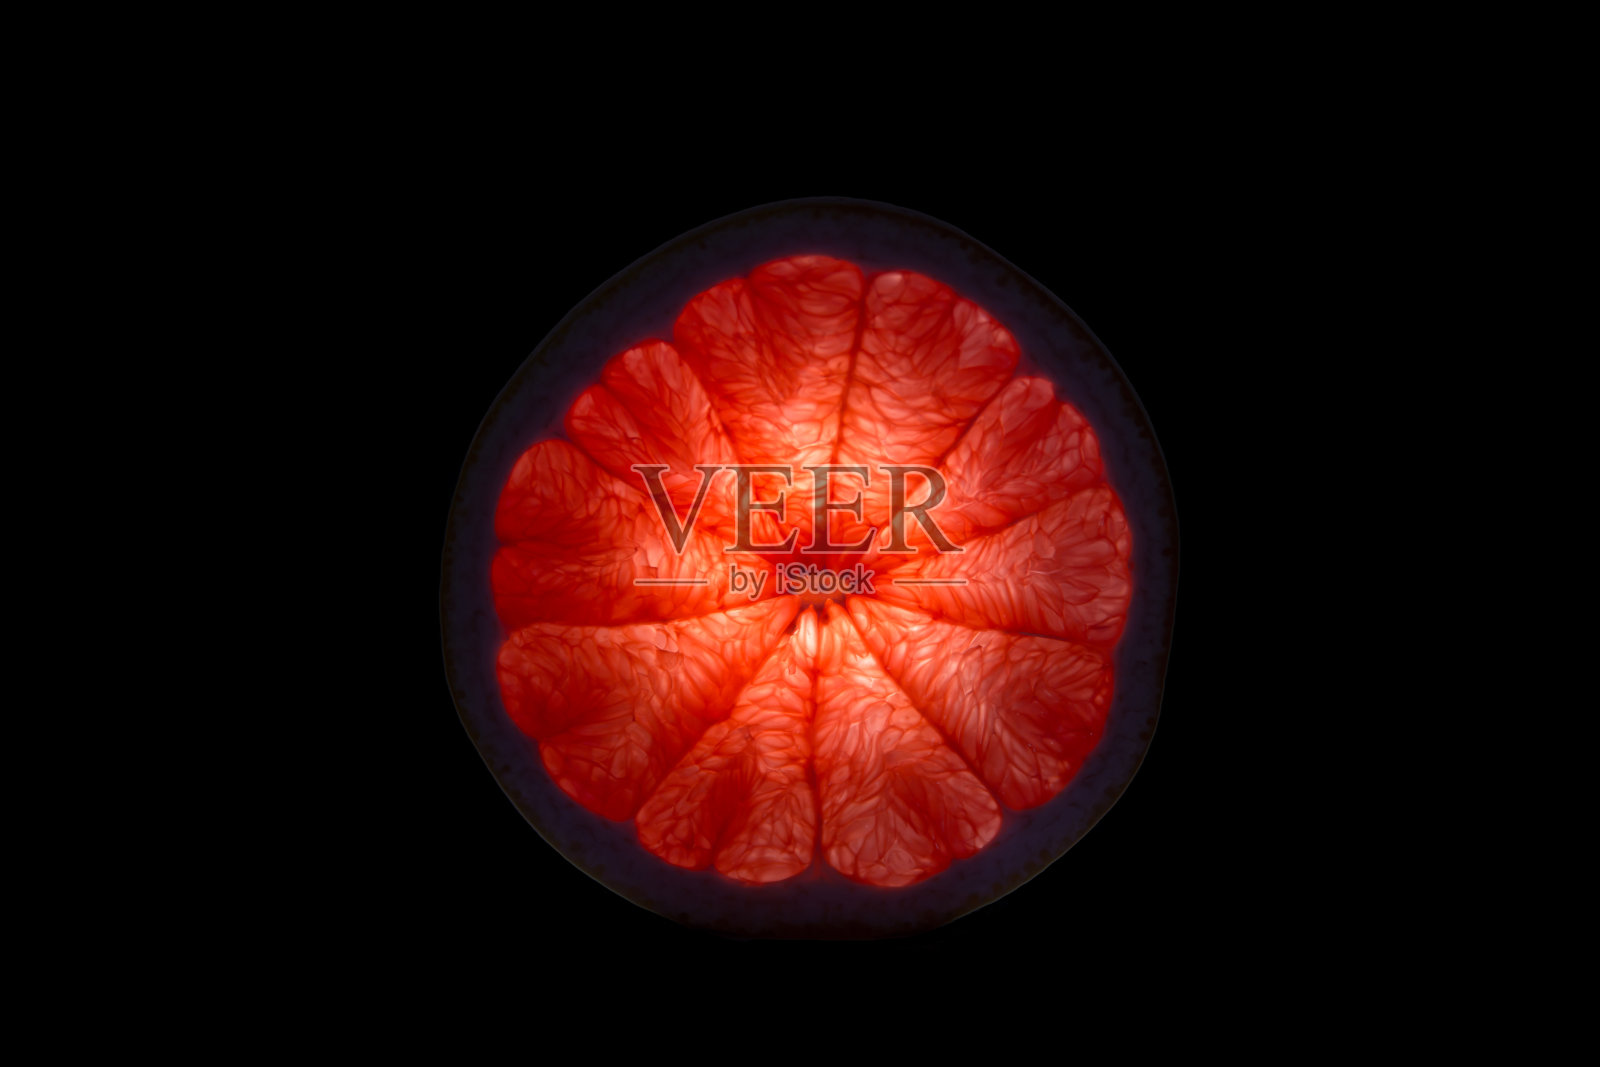 黑色背景下橙色水果的特写镜头照片摄影图片